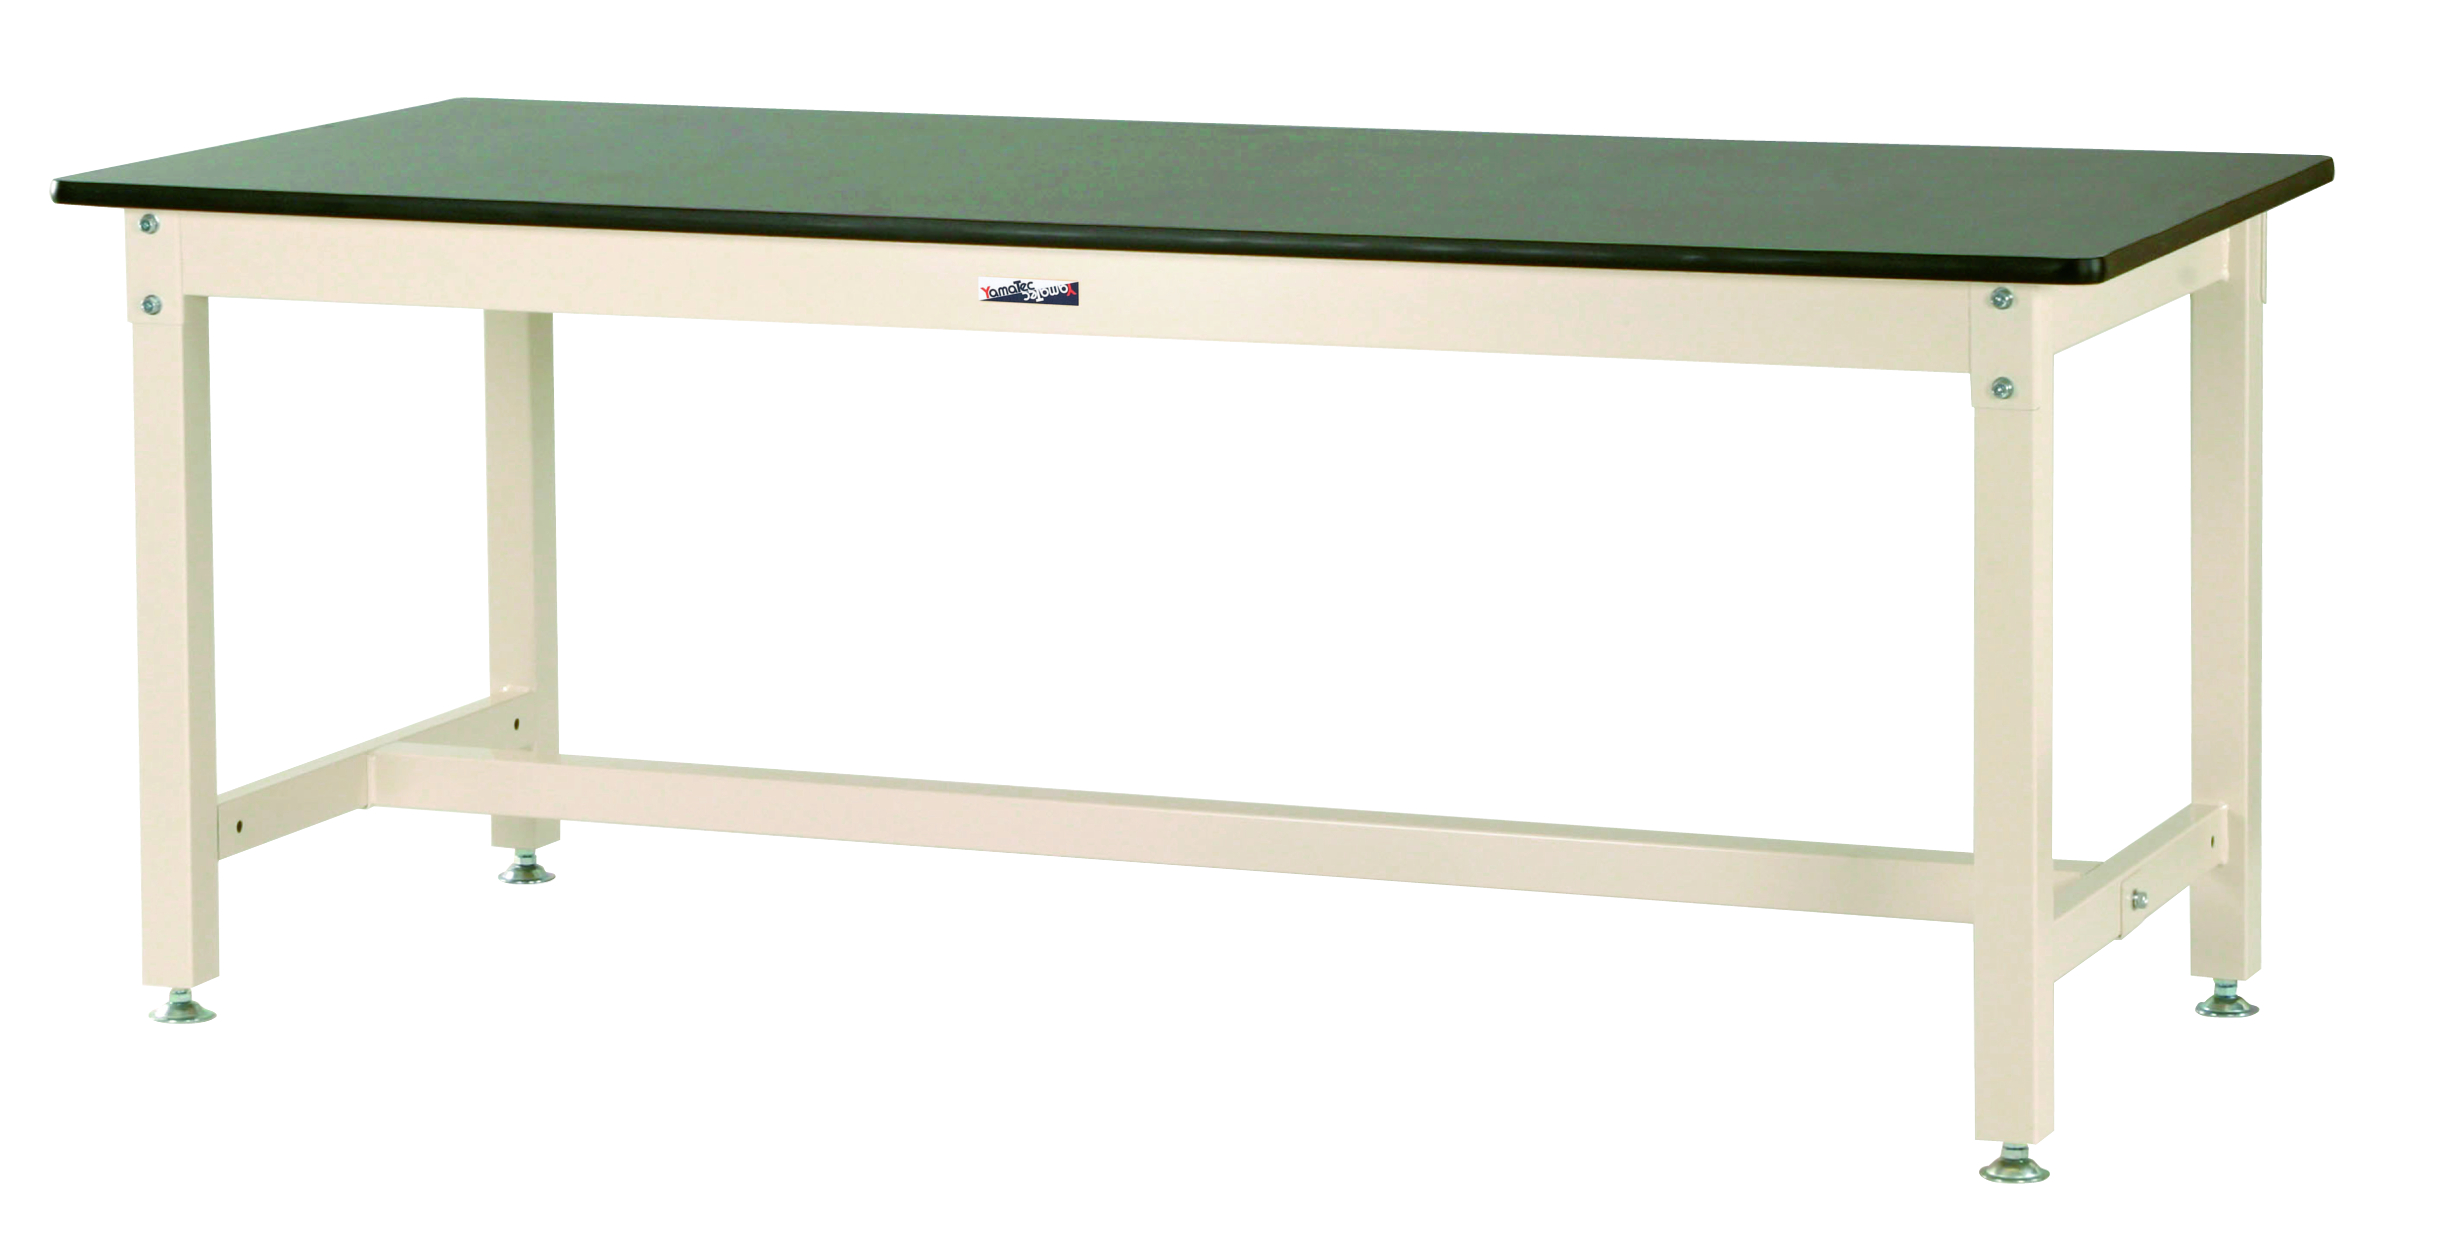 ヤマテック ワークテーブル 800シリーズ 固定式 H740mm 塩ビシート天板 SVR-975 | 業務用スチールラックの専門店 - JP